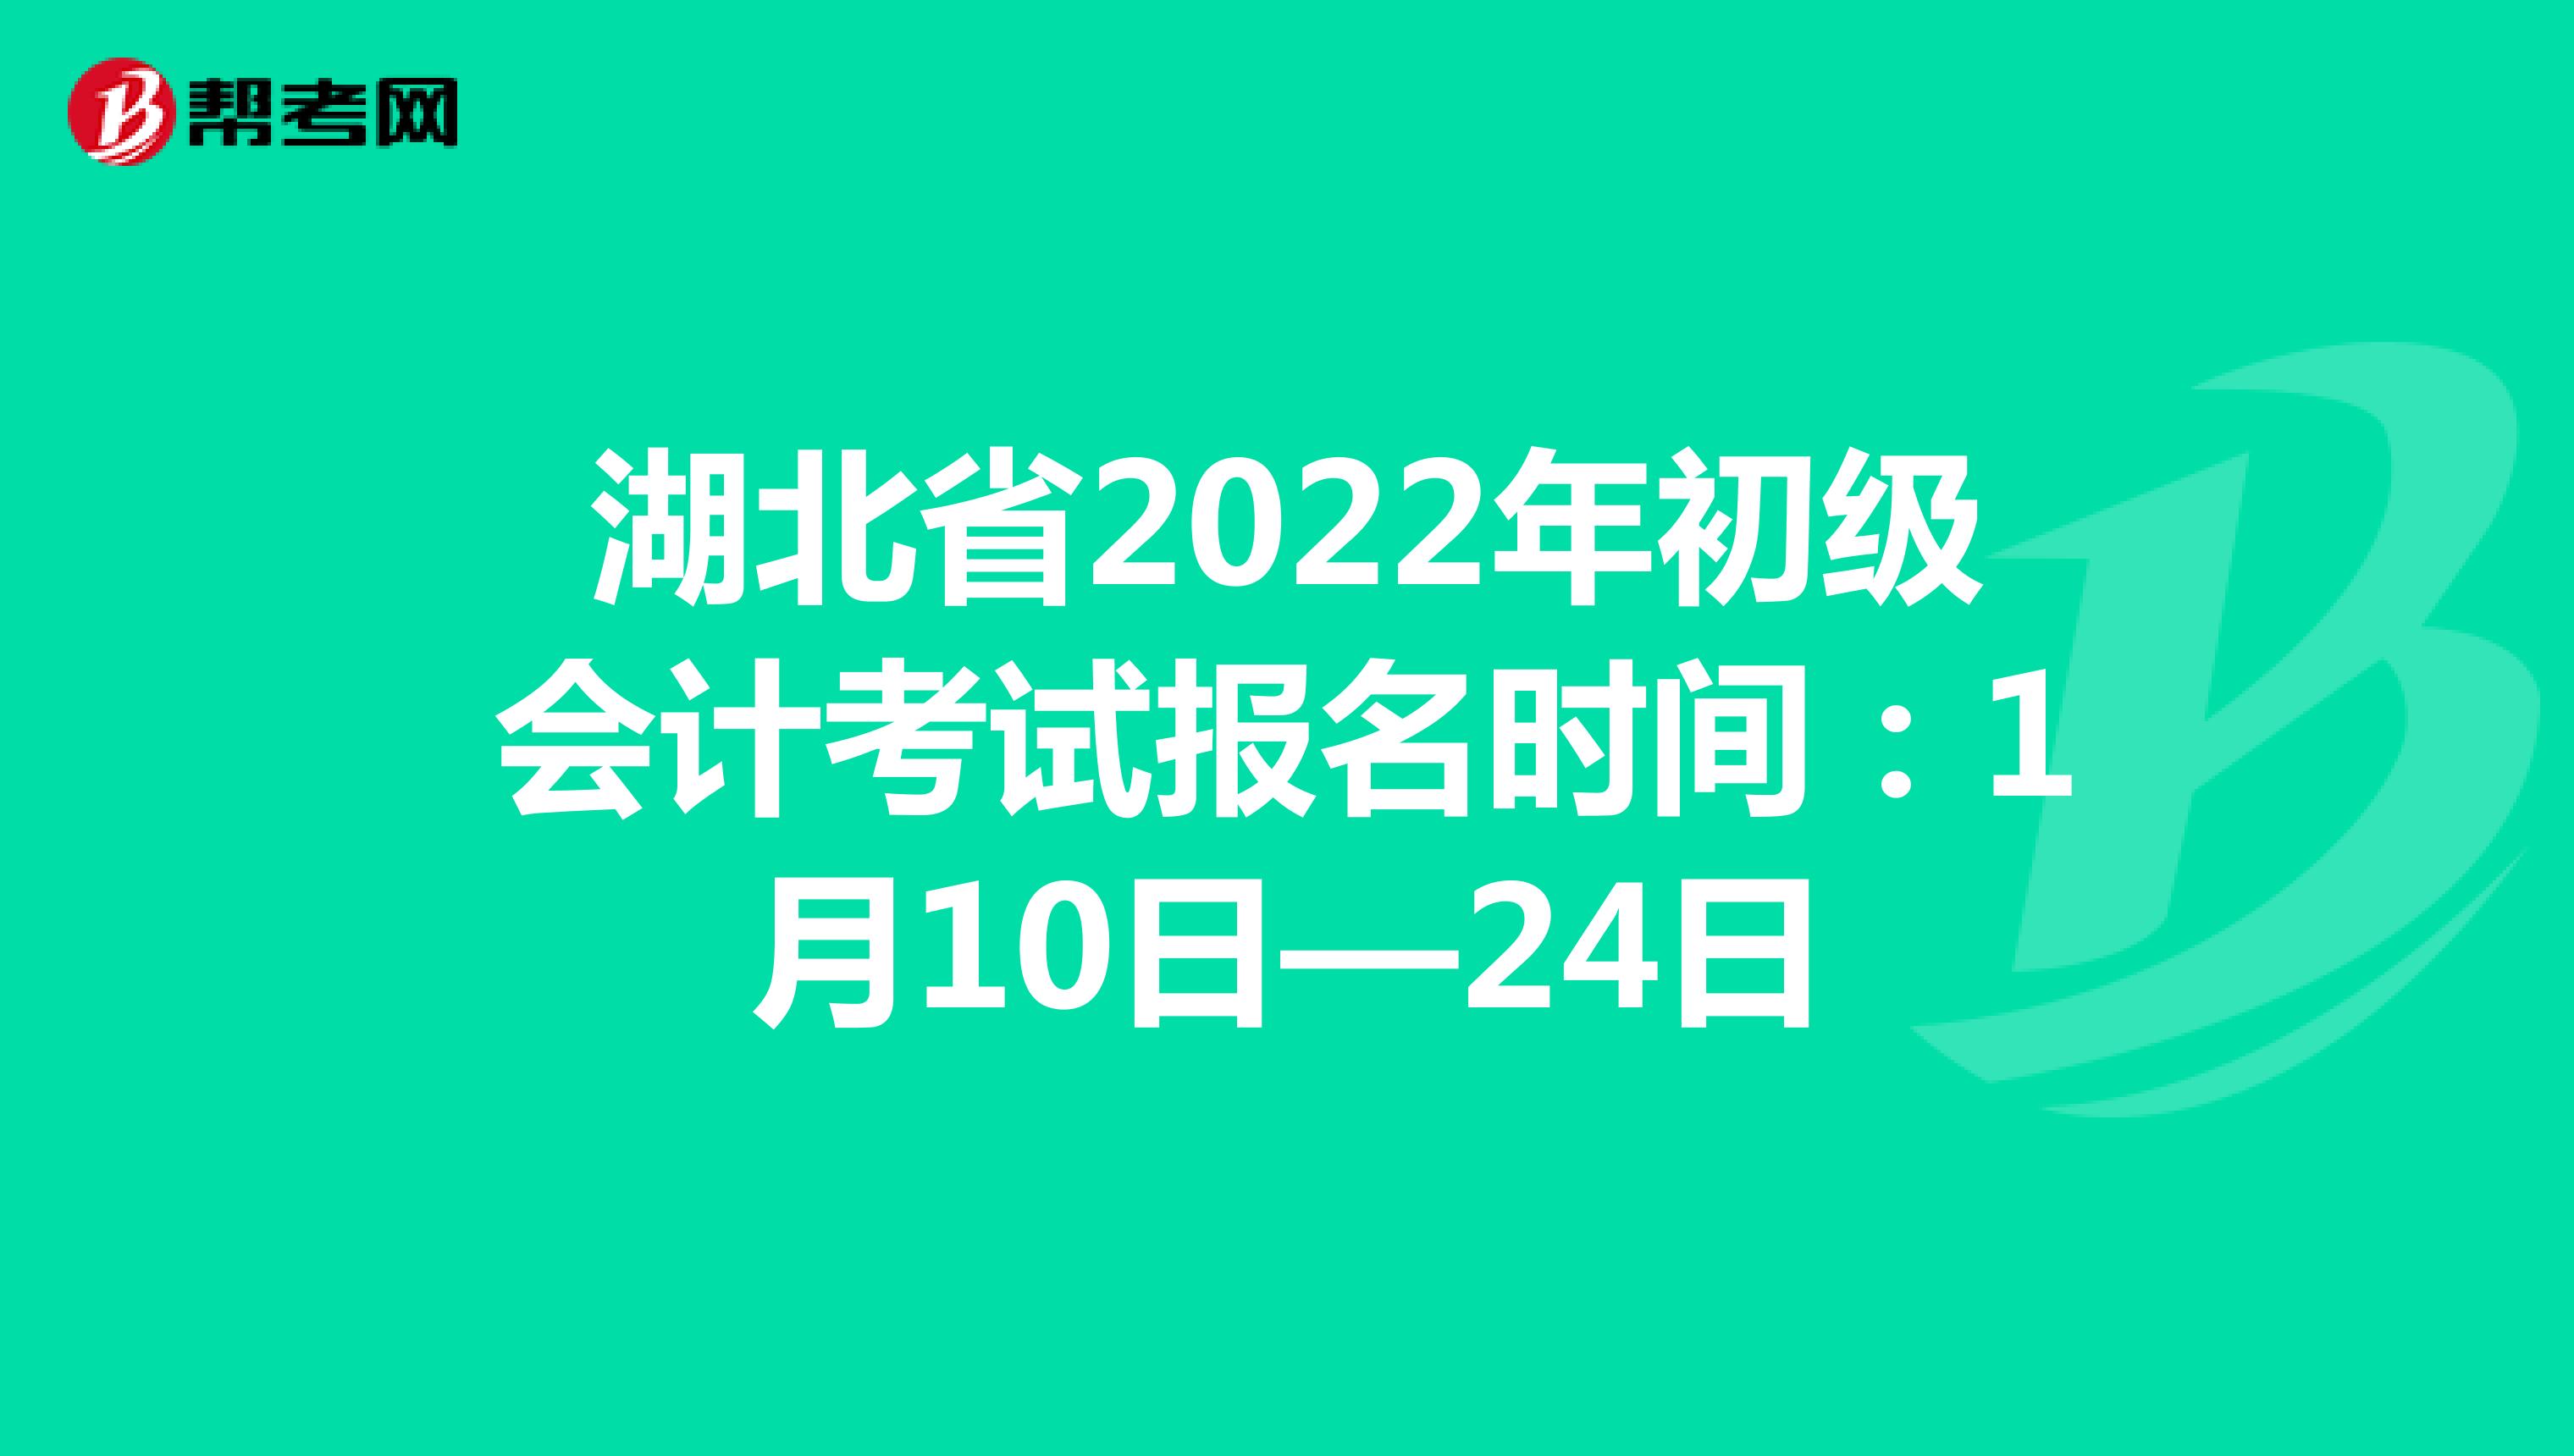 湖北省2022年初级会计考试报名时间：1月10日—24日